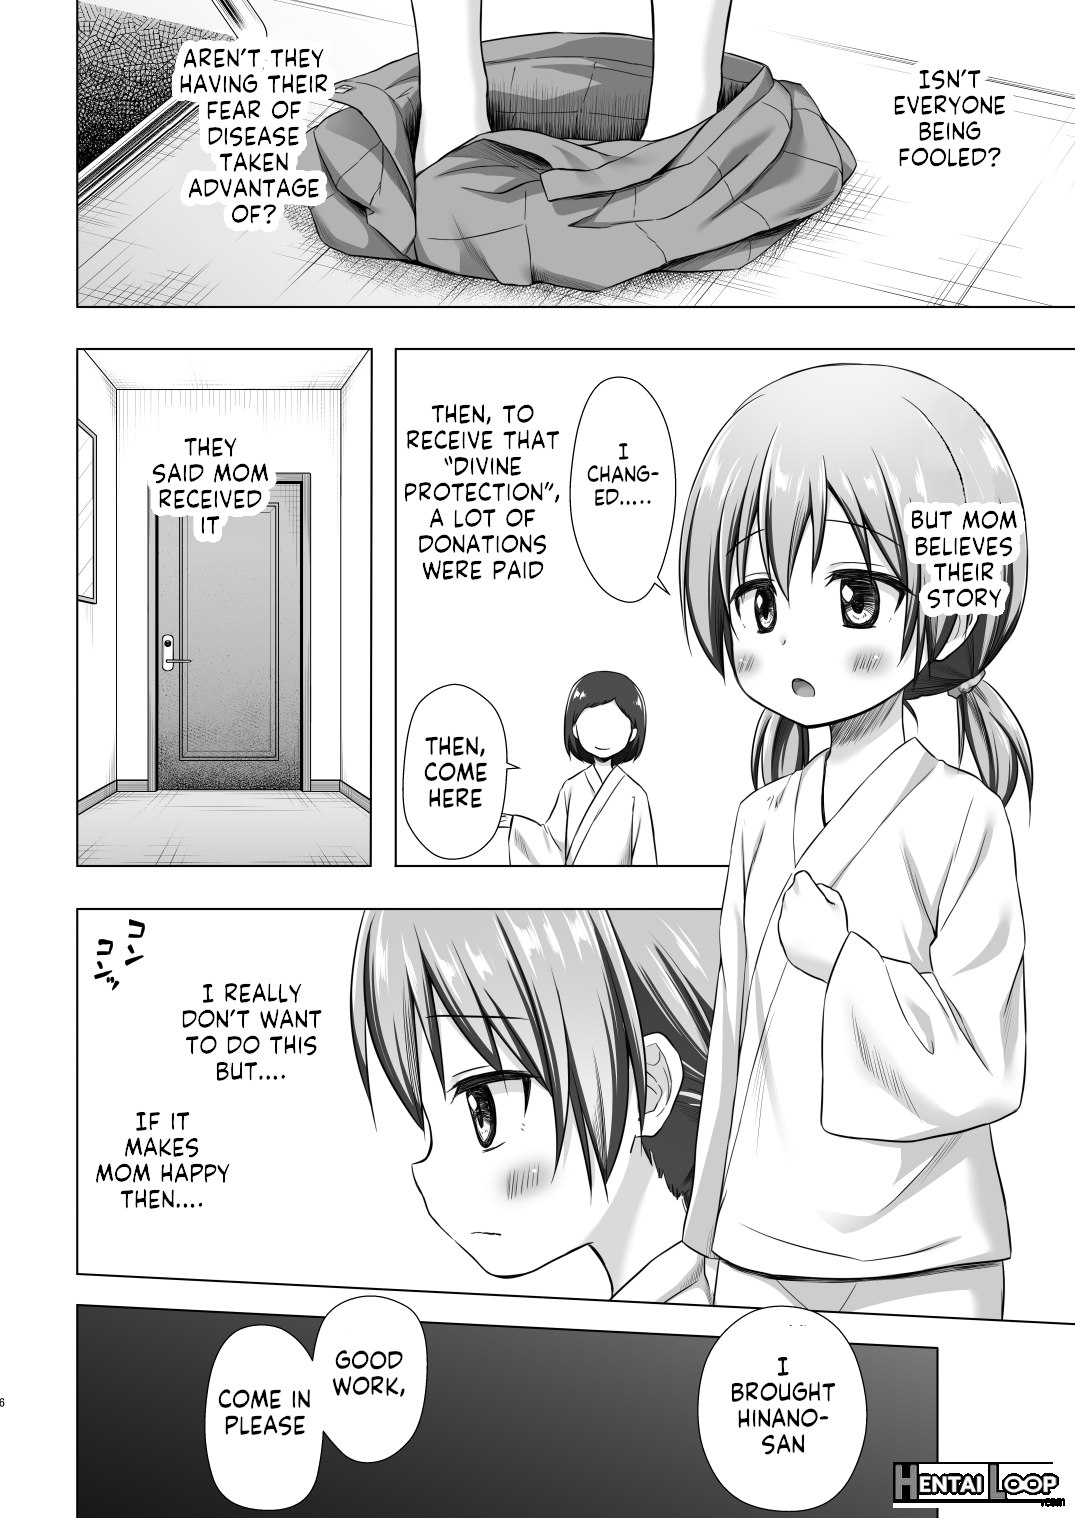 Hinano-chan's Situation page 5